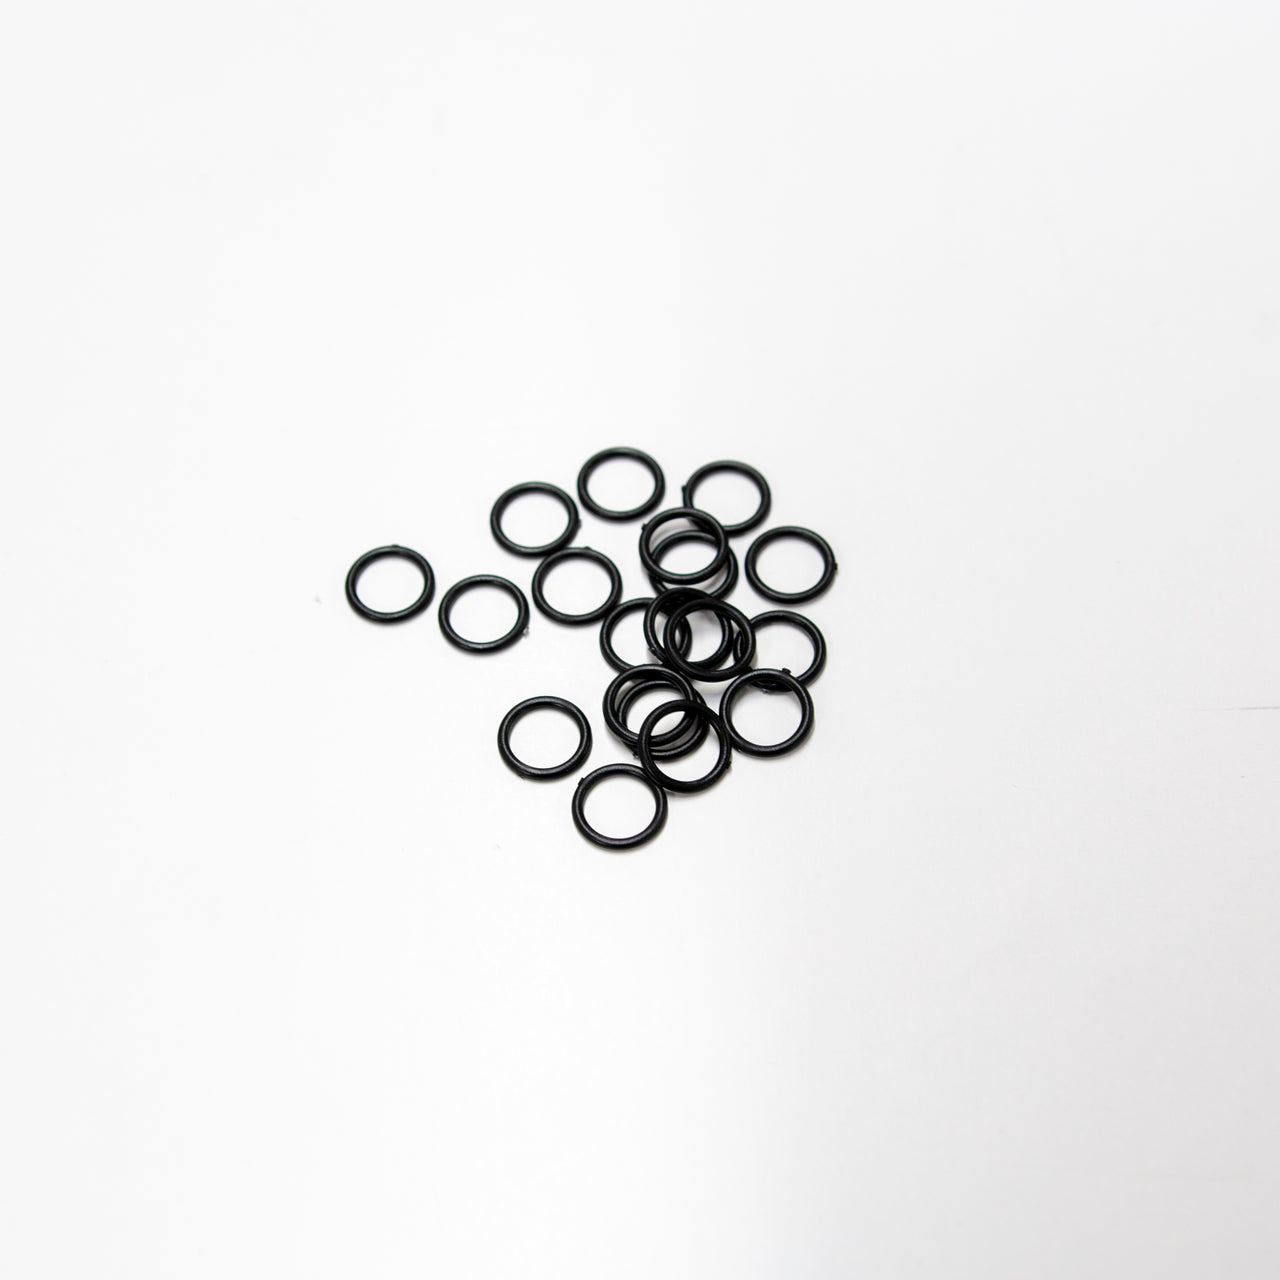 Plastic Rings for Lingerie, Black